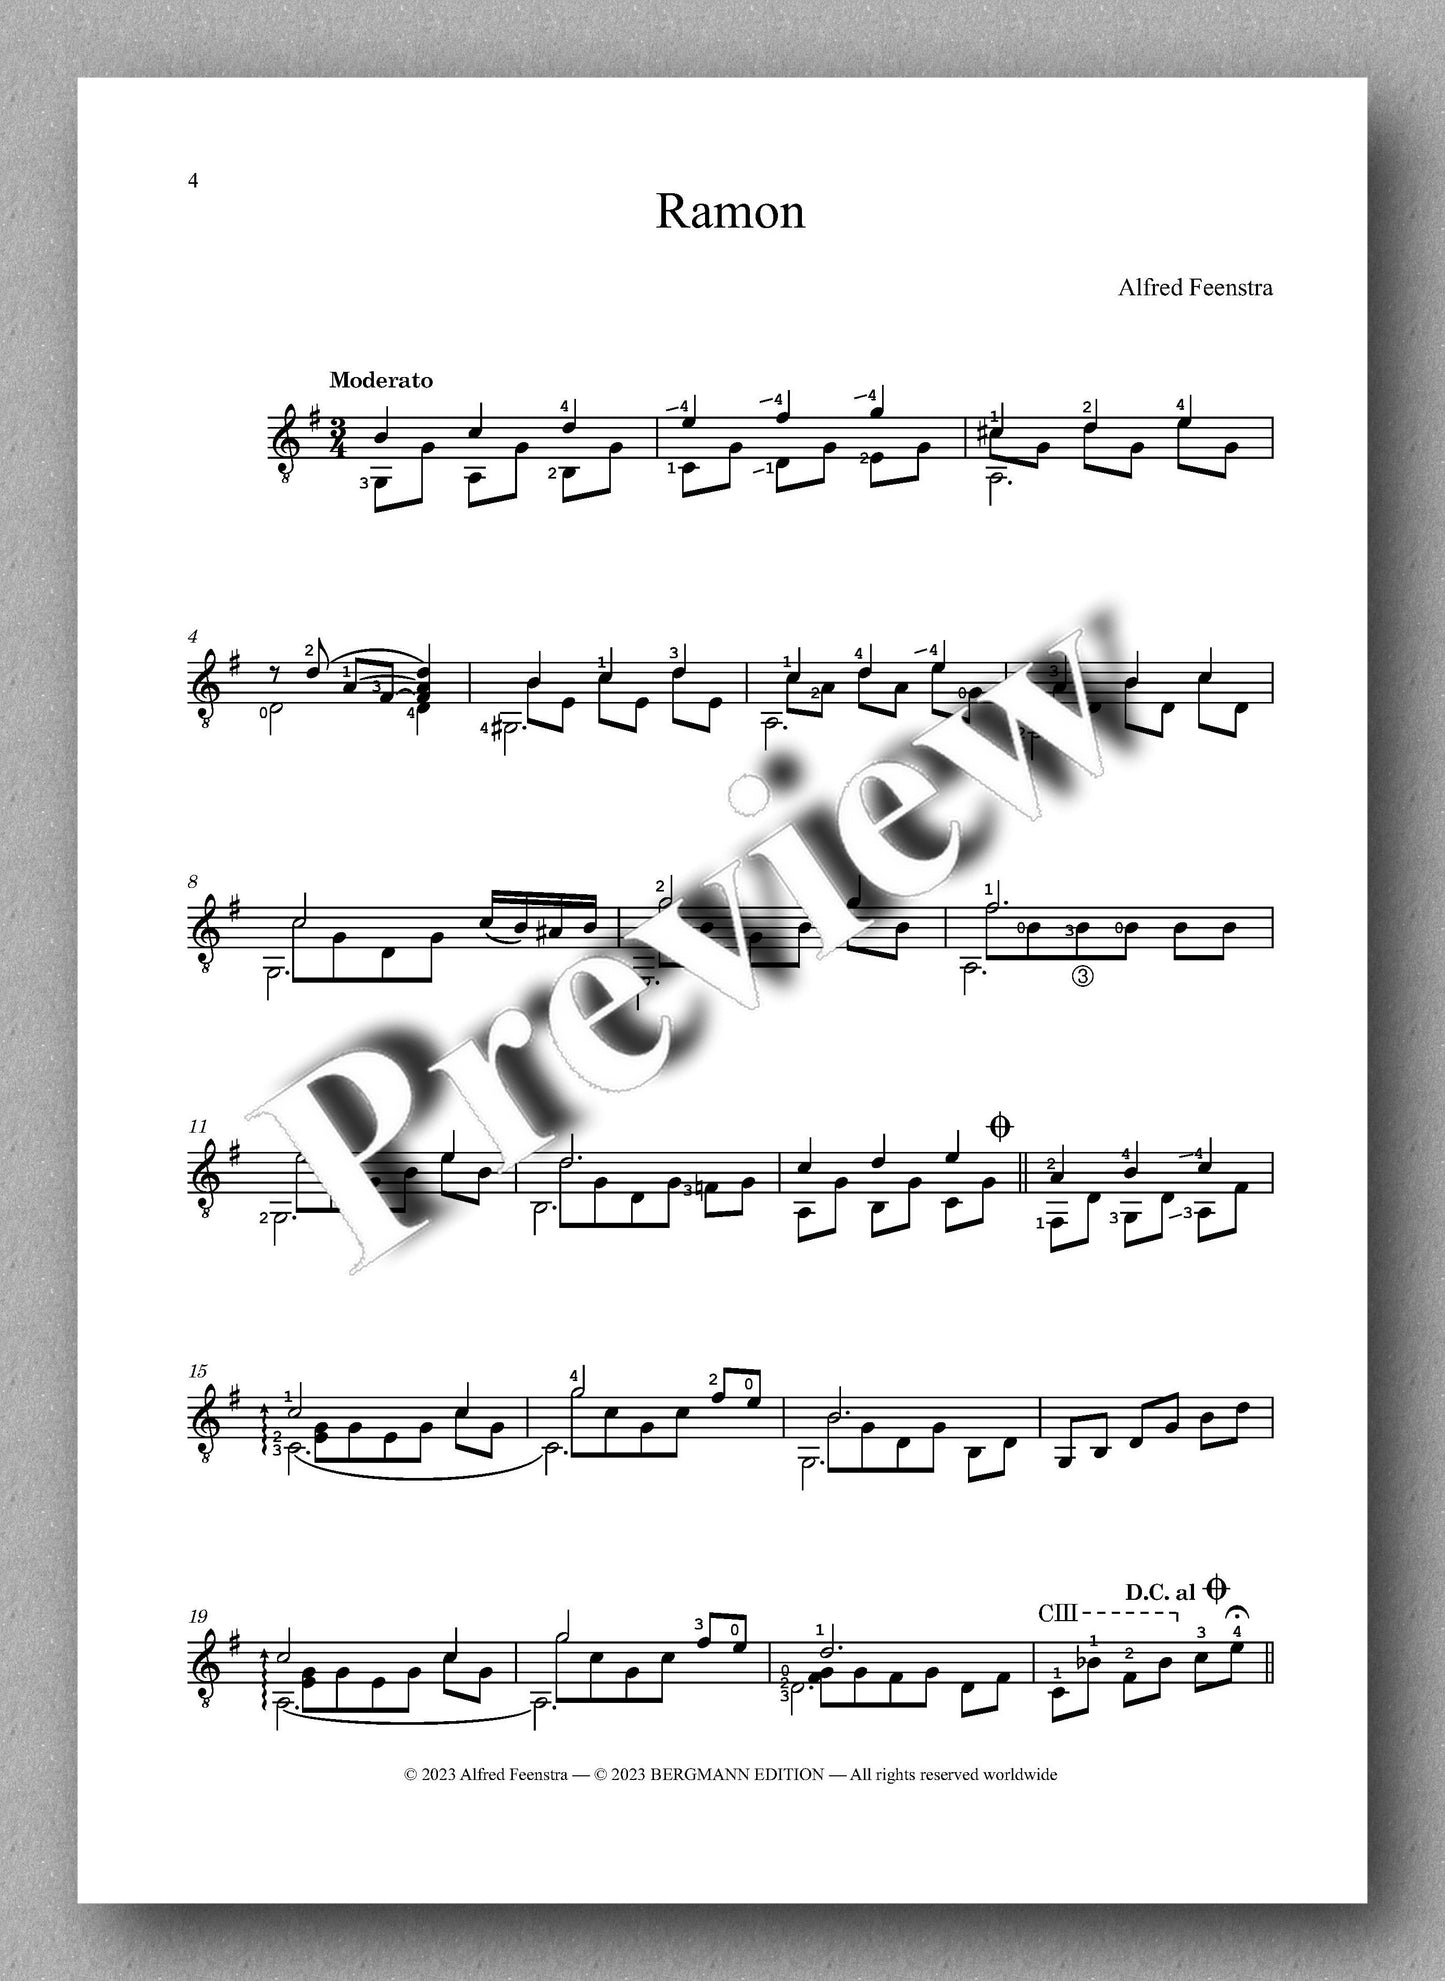 Feenstra, Preludio, Ramon & Thomas - preview of the music score 1